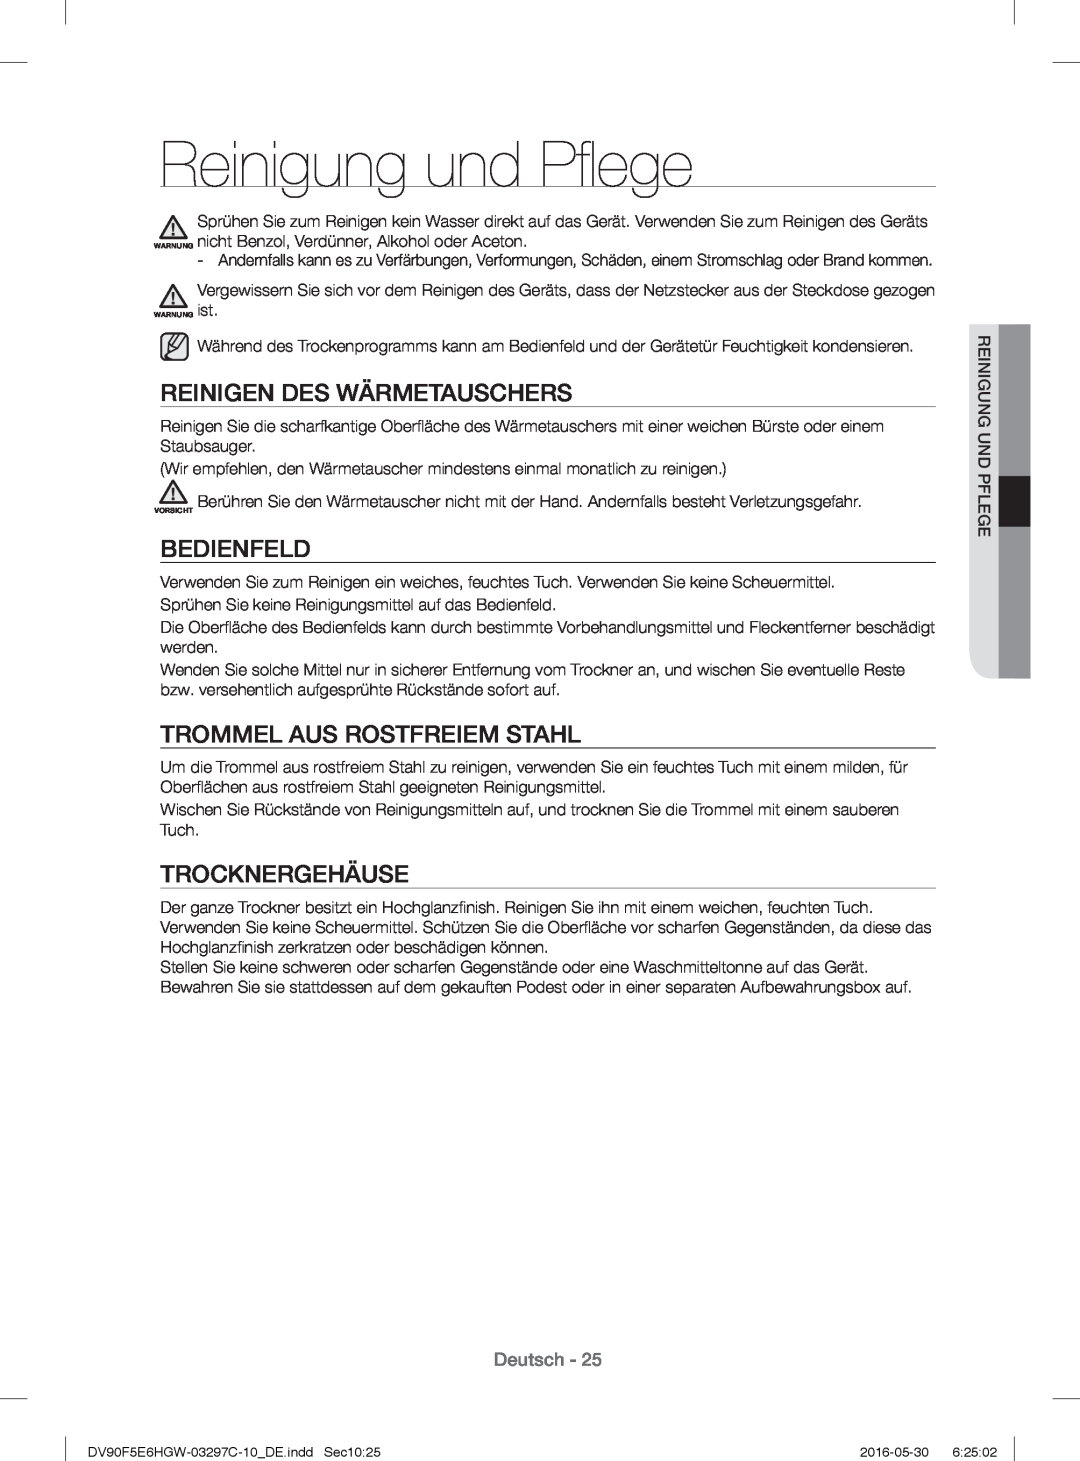 Samsung DV70F5E0HGW/EG manual Reinigung und Pﬂ ege, Reinigen Des Wärmetauschers, Bedienfeld, Trommel Aus Rostfreiem Stahl 